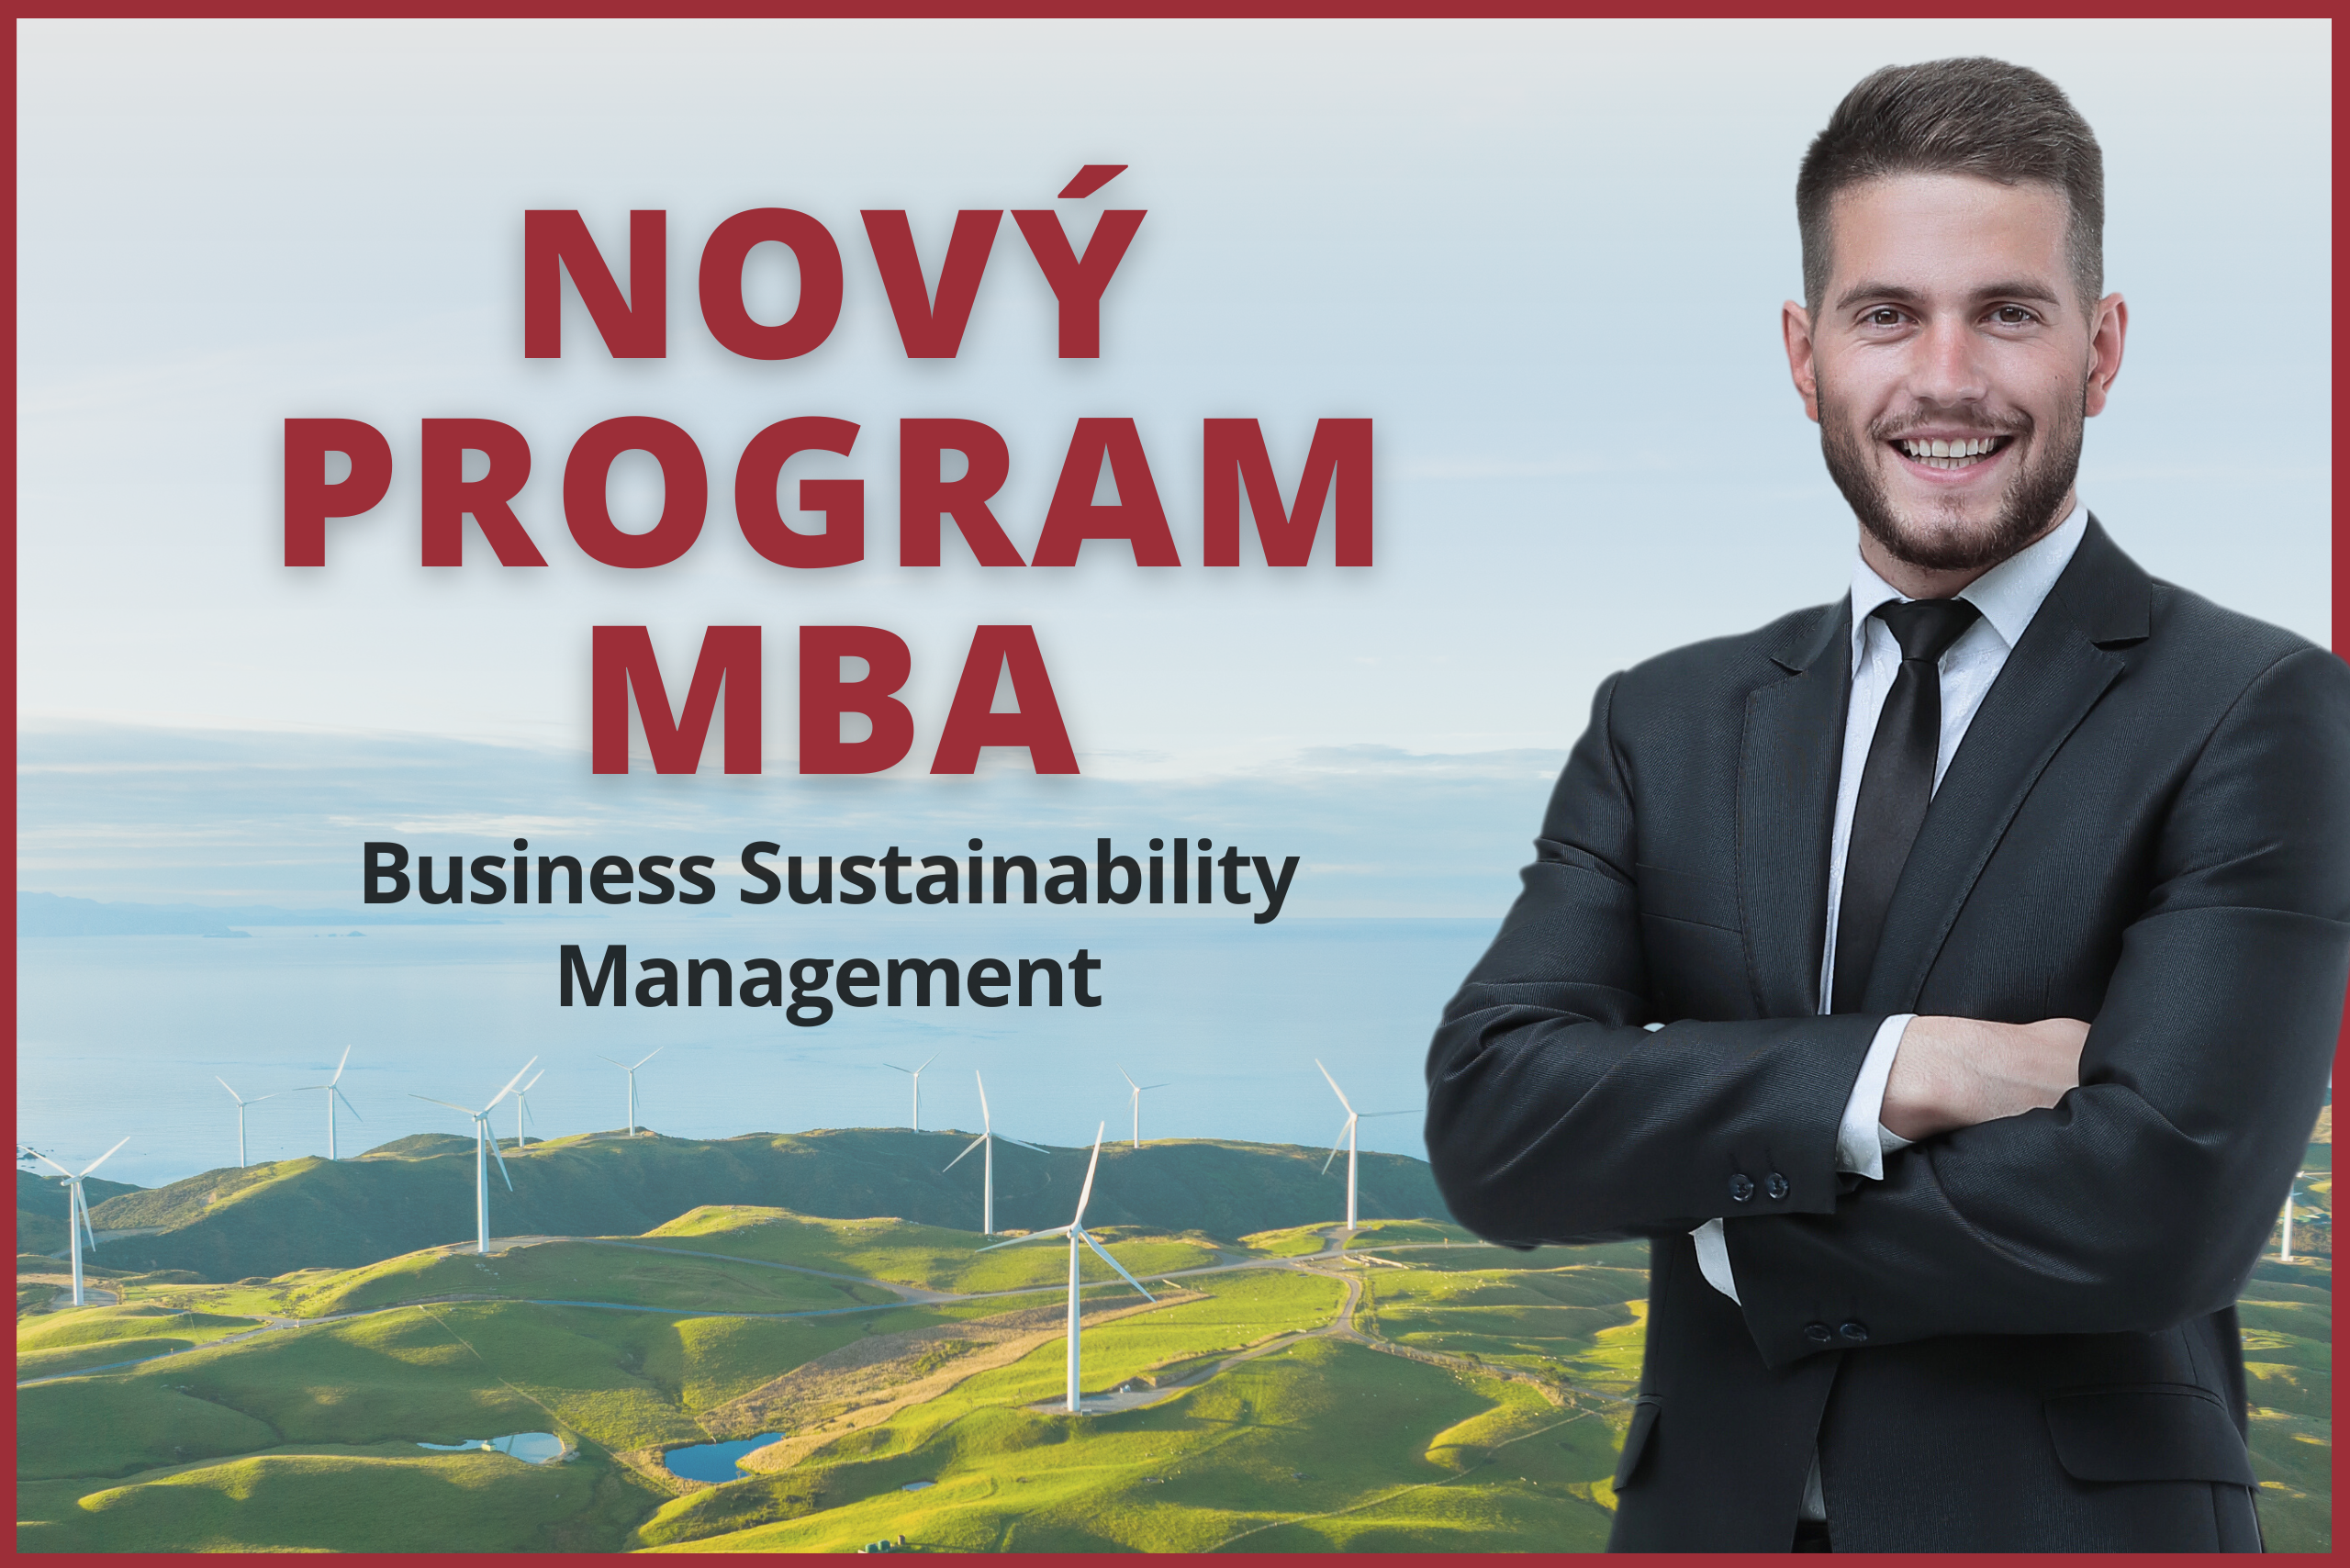 Nový program MBA - Business Sustainability Management